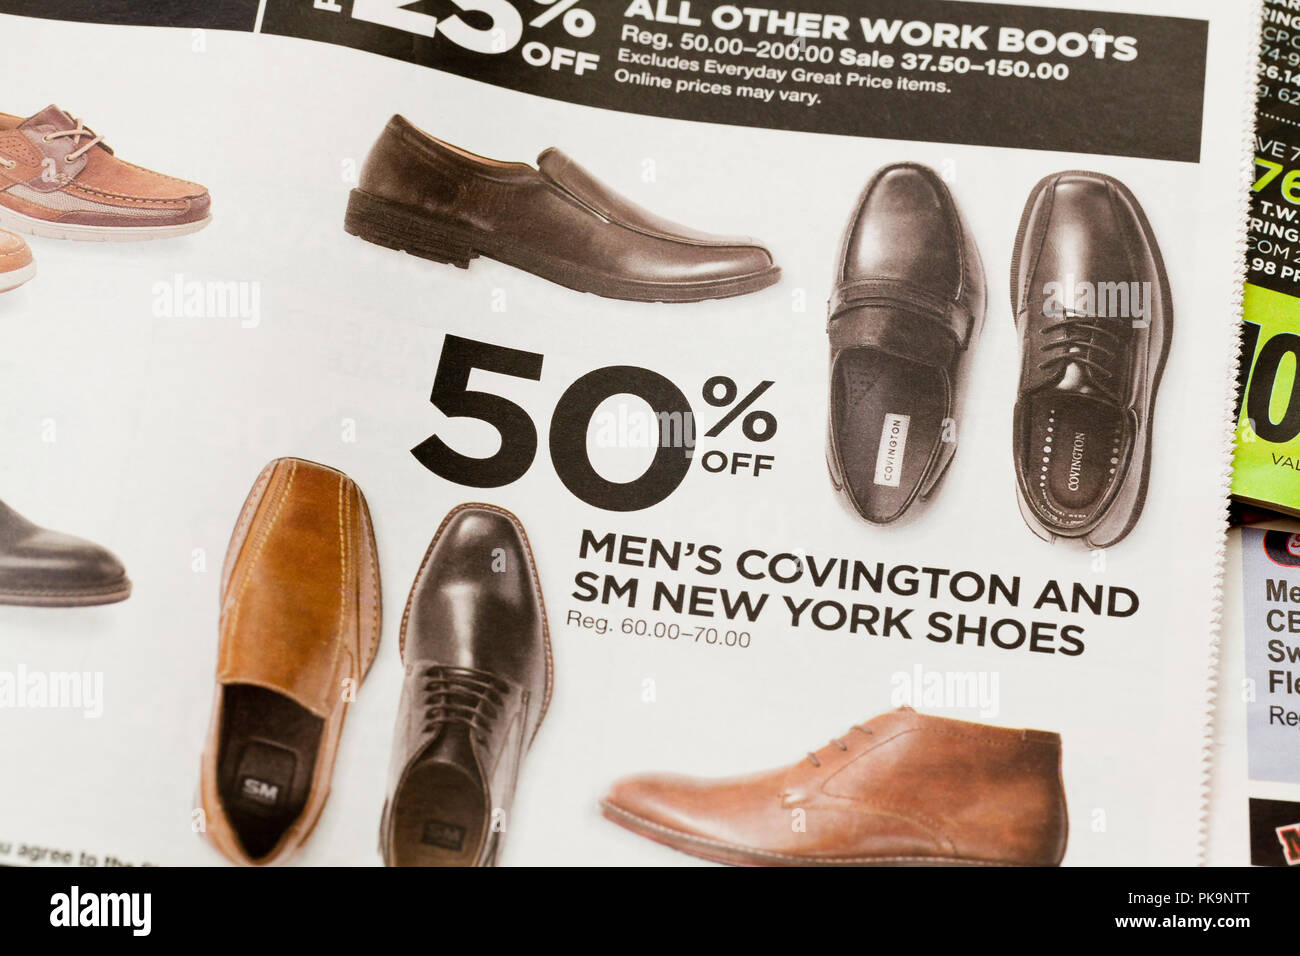 Clarks Shoes Lisburn Flash Sales, 53% OFF | ilikepinga.com